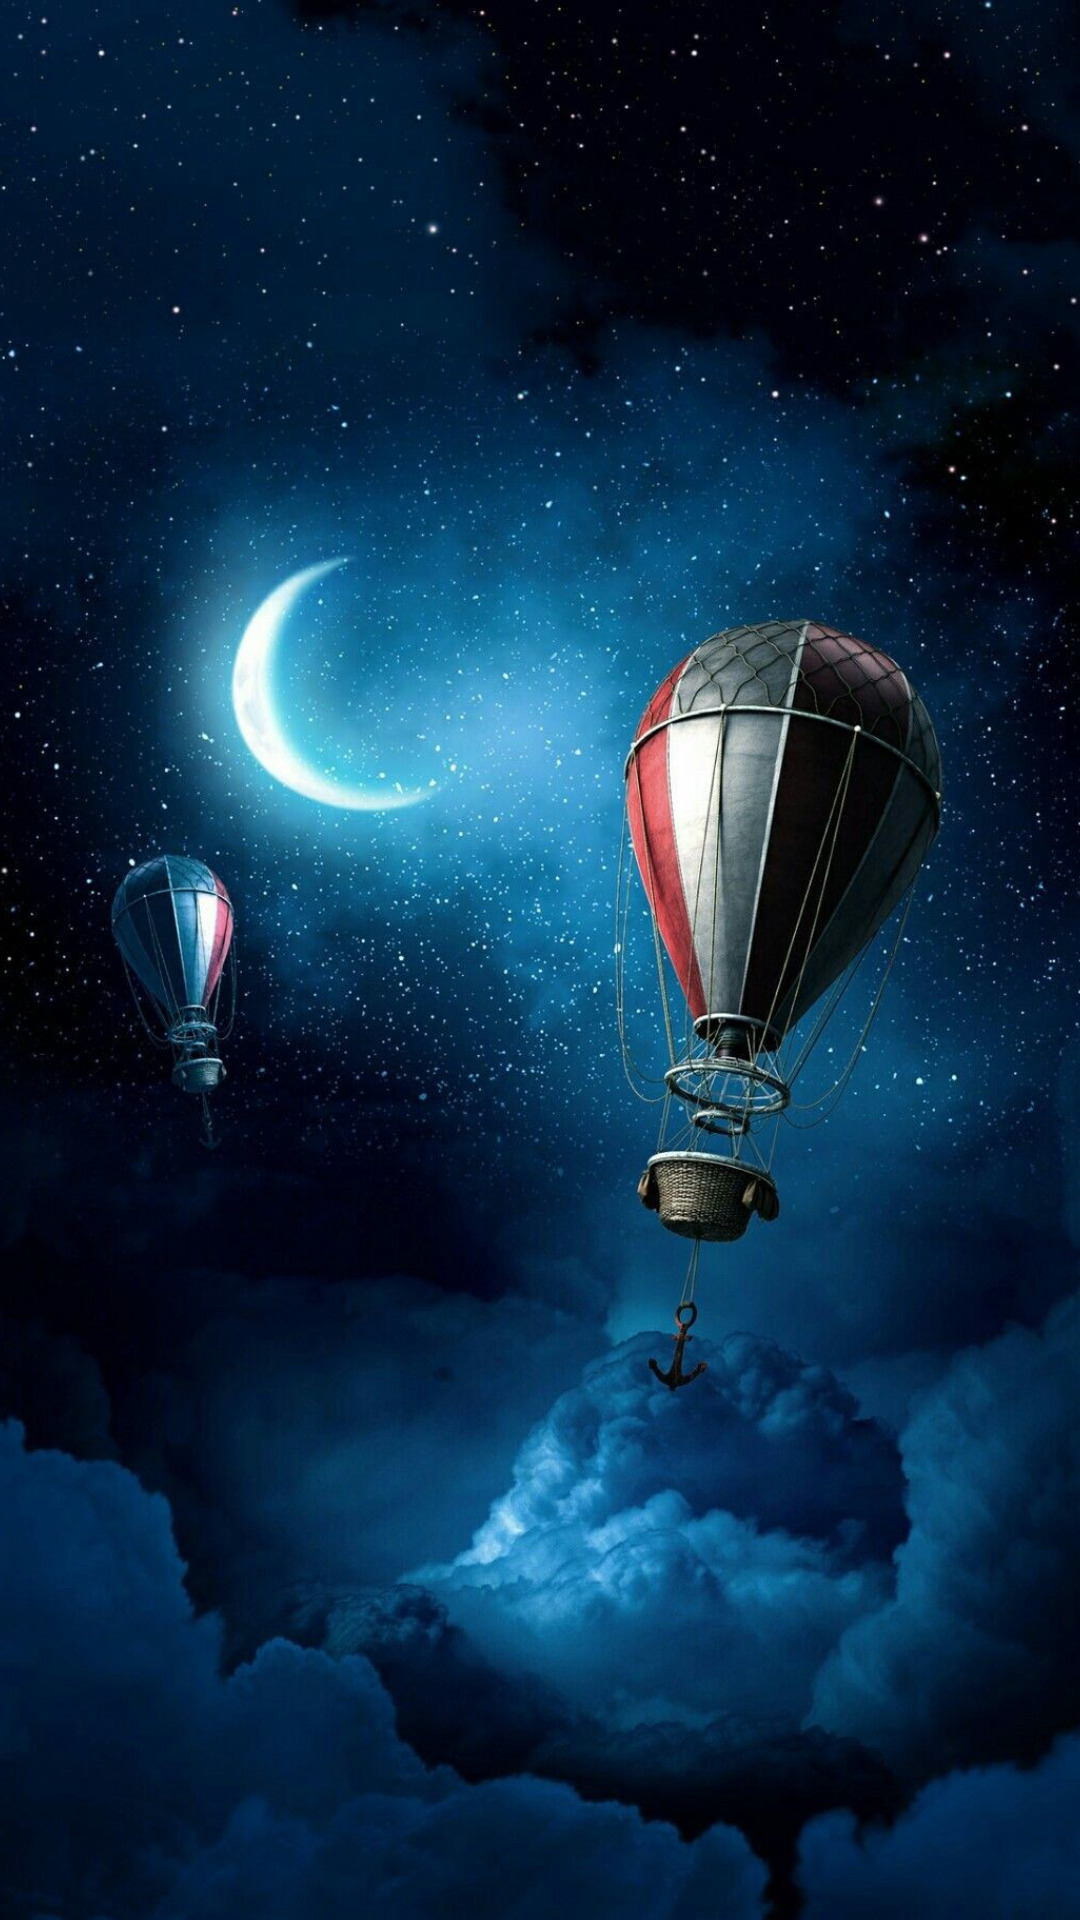 fond d'écran whatsapp tumblr,ciel,montgolfière,lumière,atmosphère,véhicule